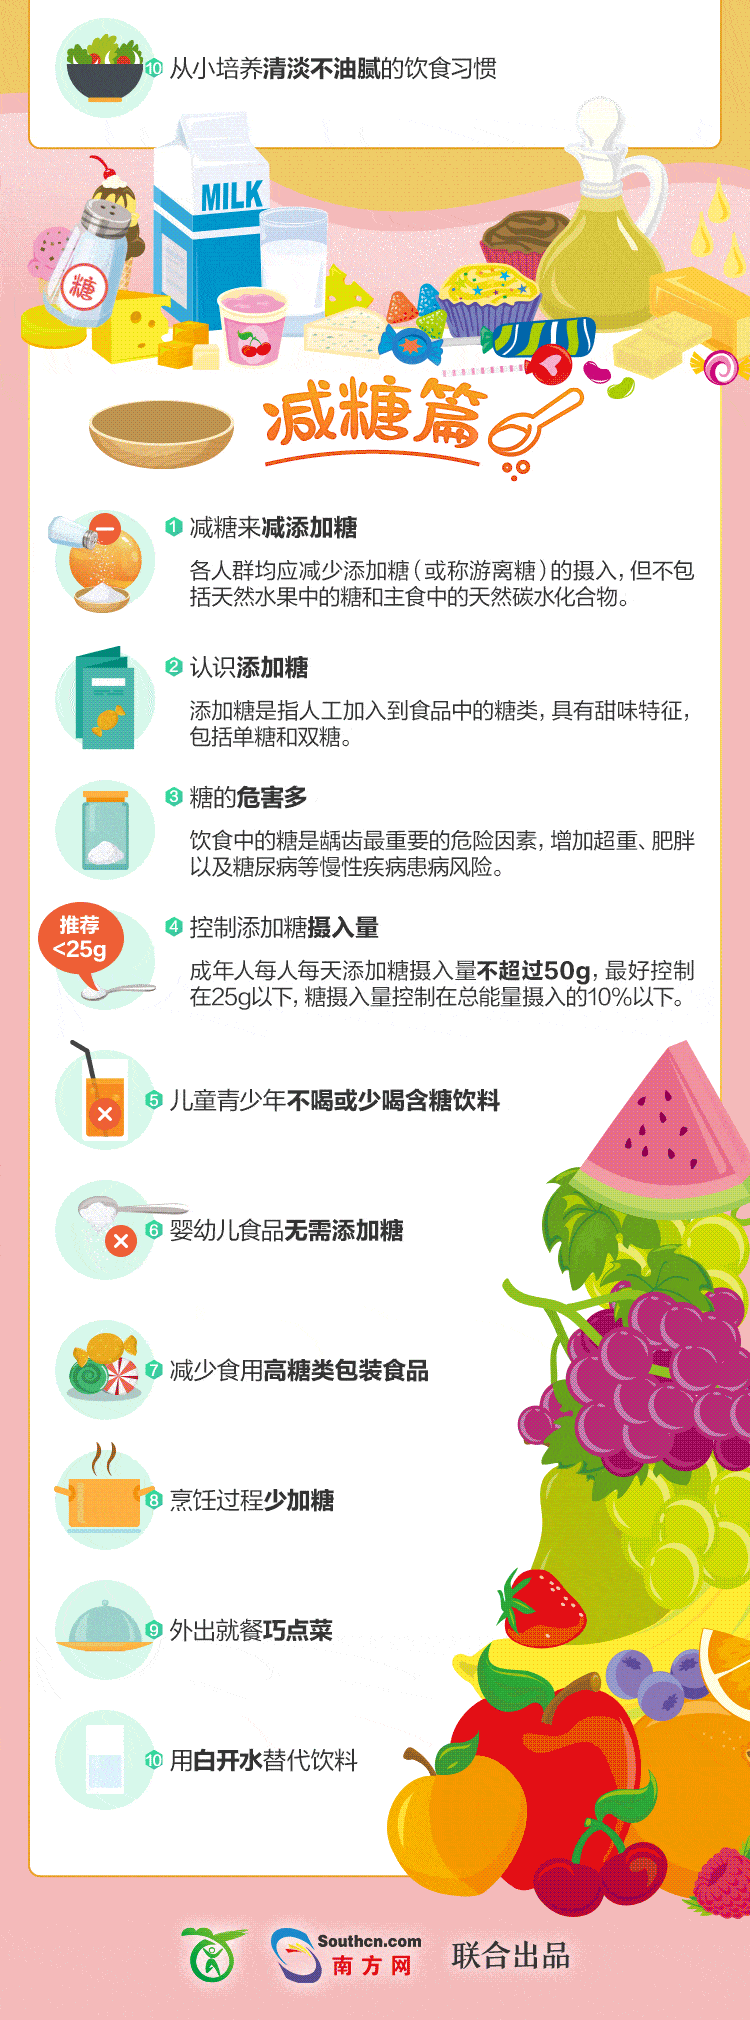 【卫生健康宣传日】全民健康生活方式宣传月:减盐,减油,减糖核心信息!